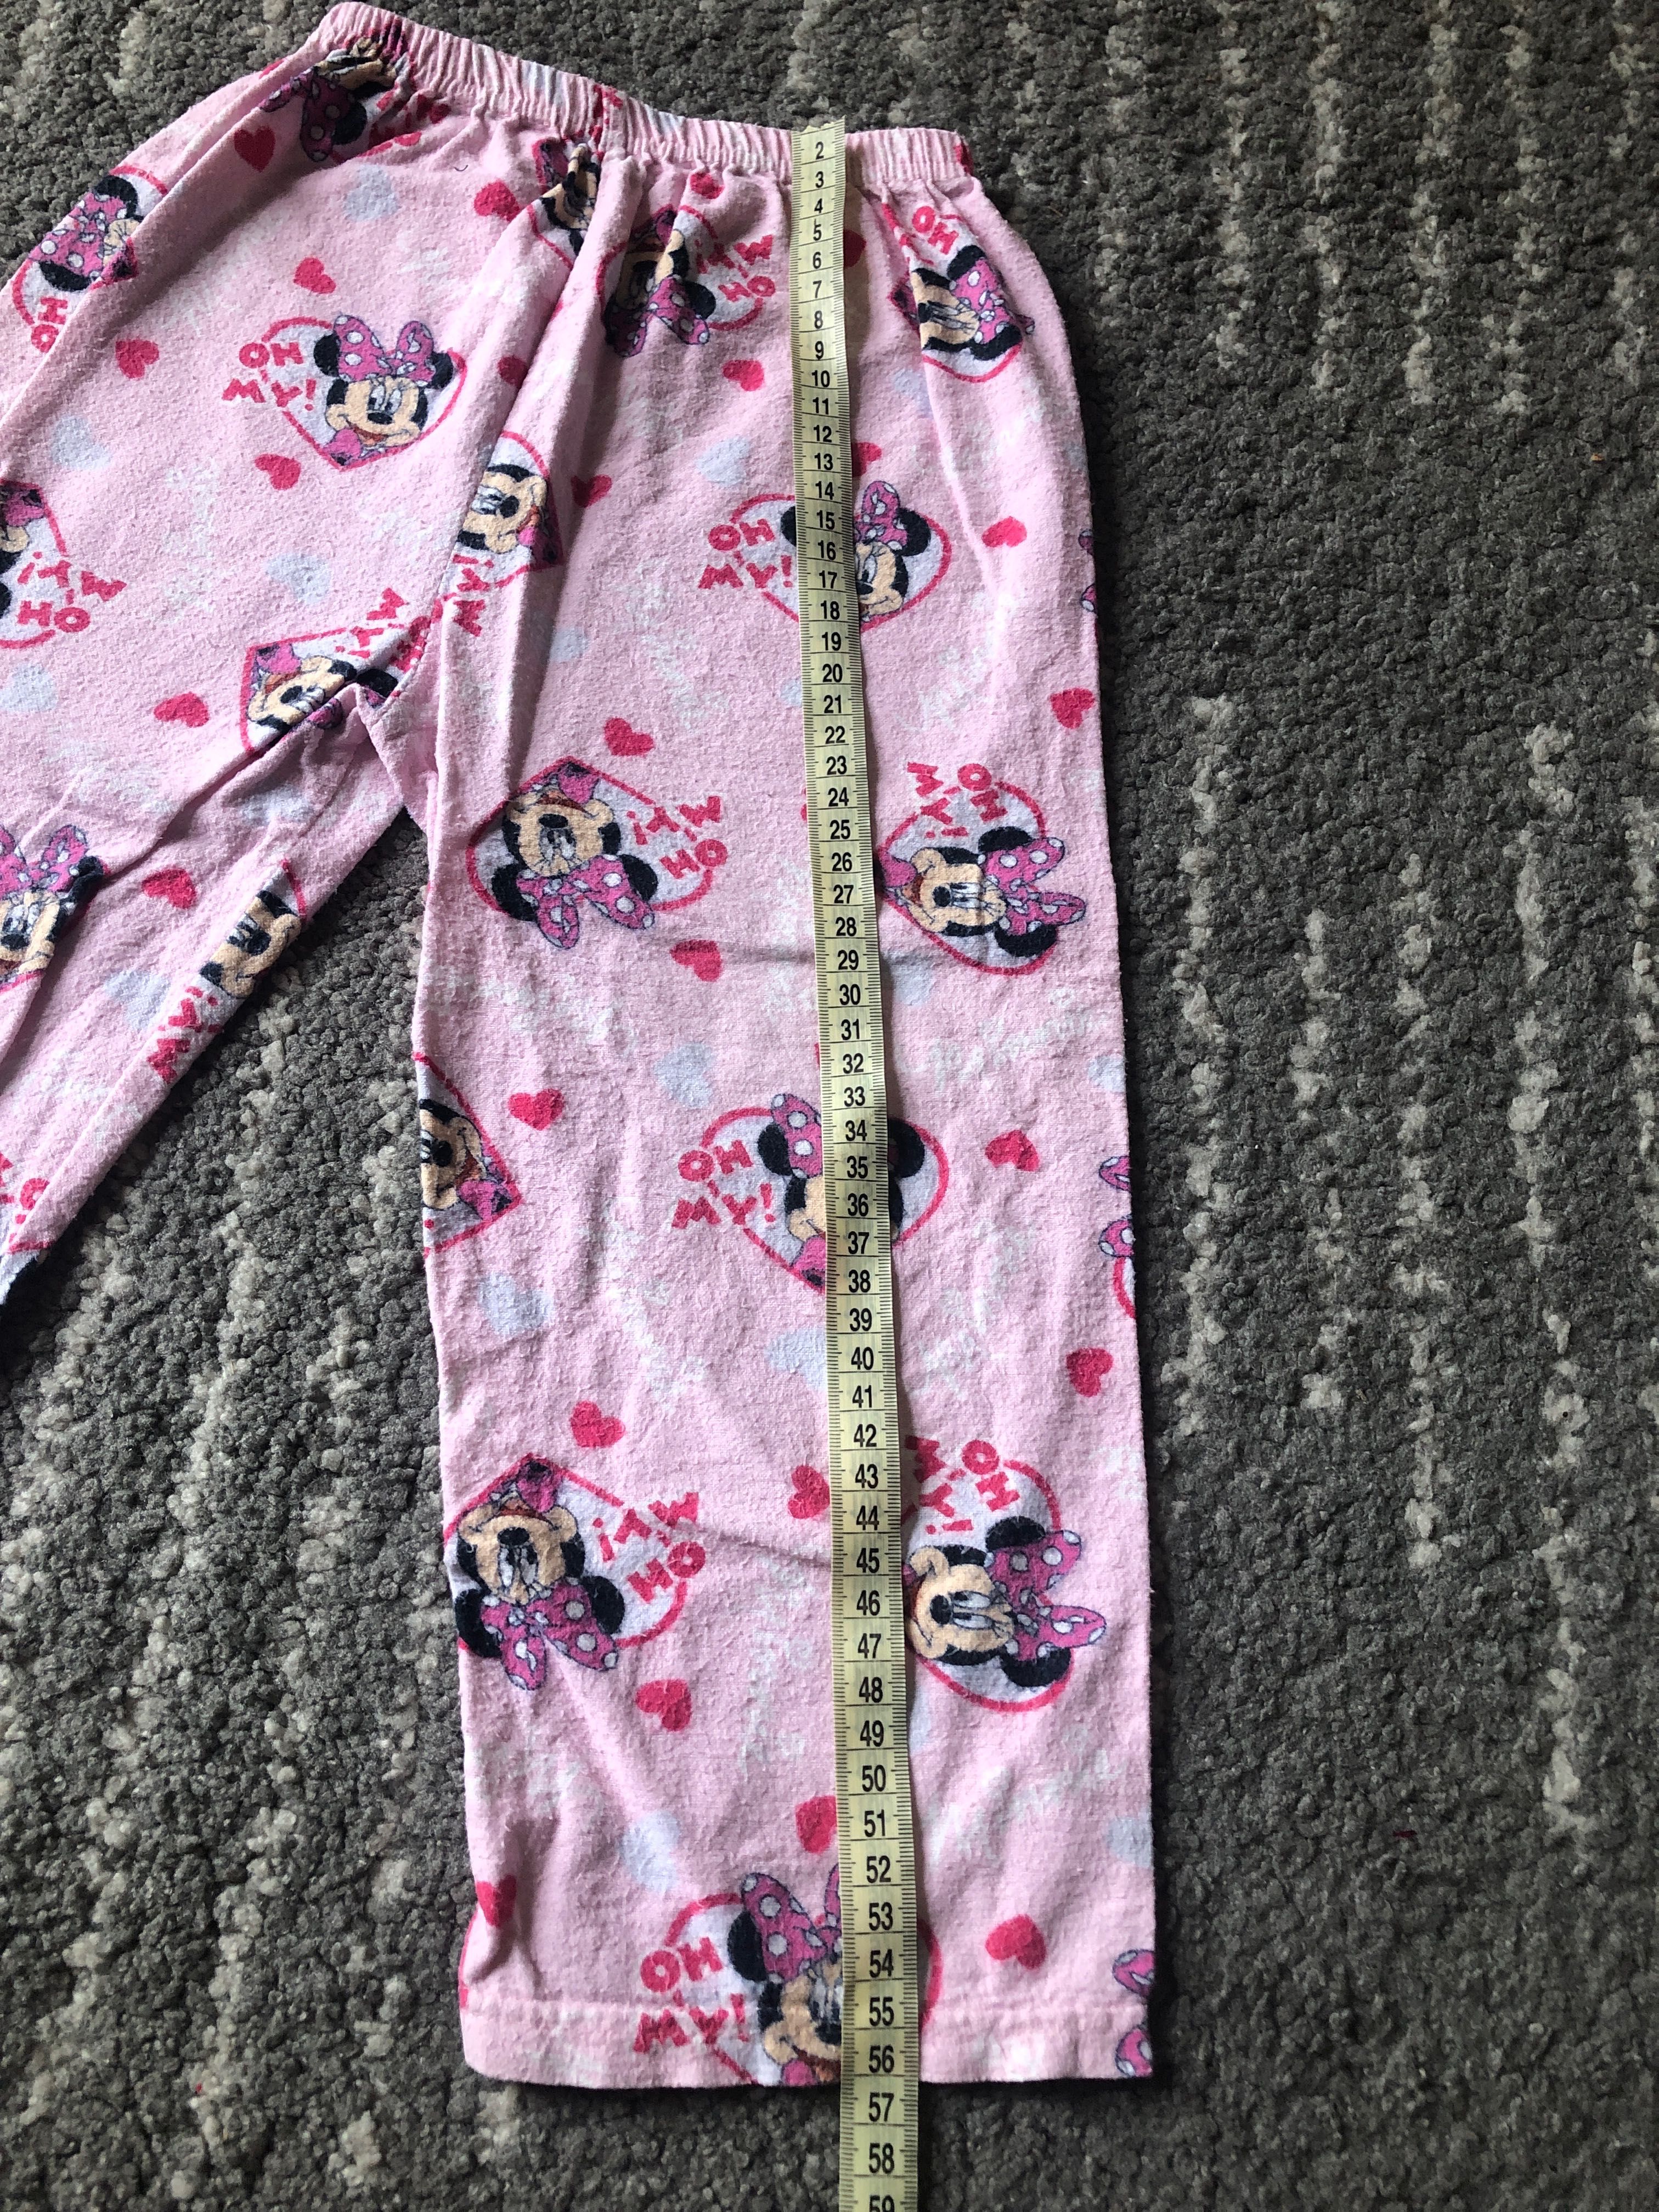 Dziewczęce flanelowe spodnie piżamowe rozmiar 104-110 Minnie Mouse